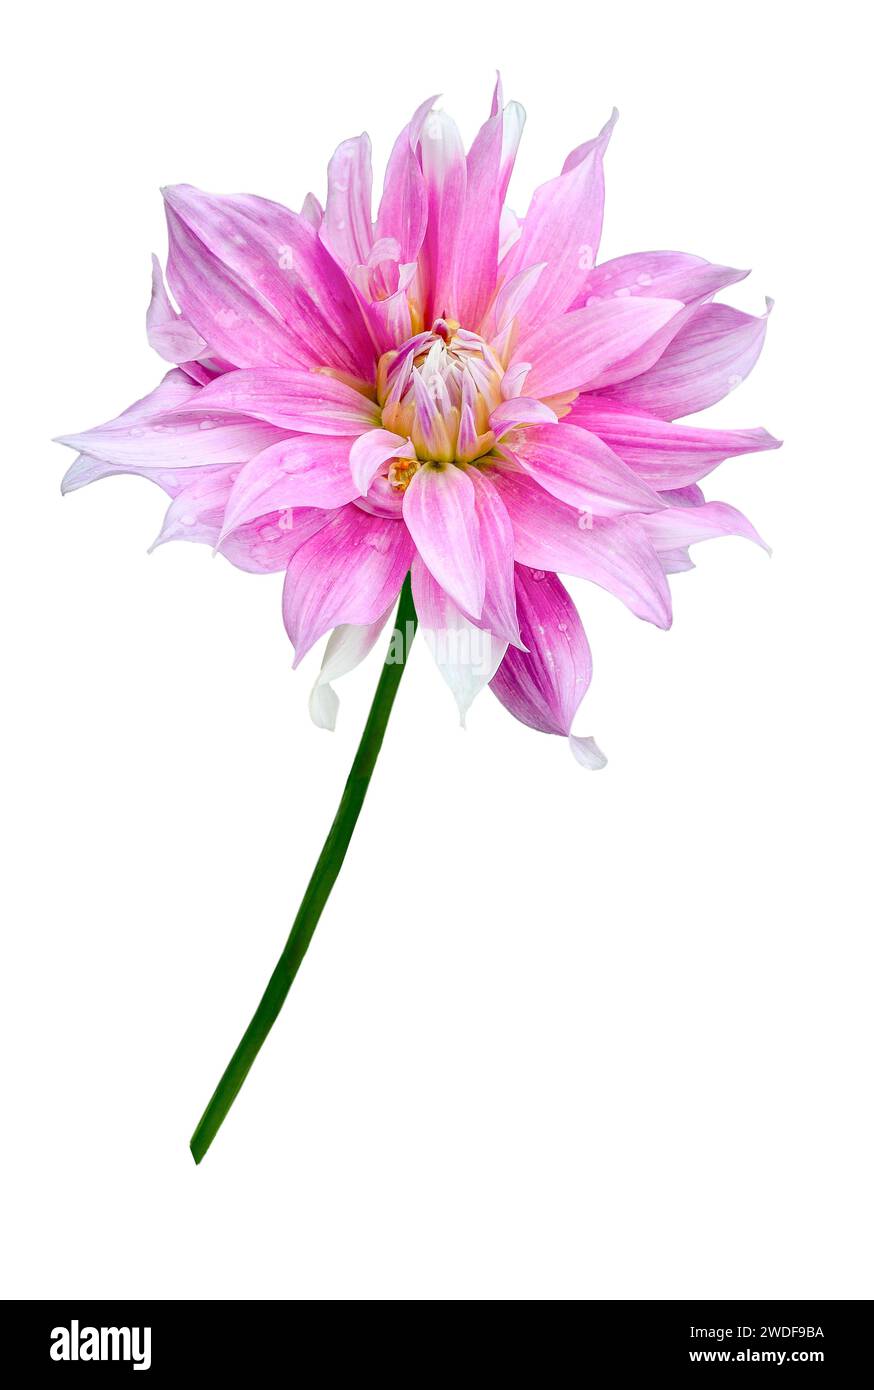 Blassrosa zarte Dahlienblume isoliert auf weißem Hintergrund Nahaufnahme. Blumendesign oder festliches Muster der Grußkarte. Schönheit und Perfektion von na Stockfoto